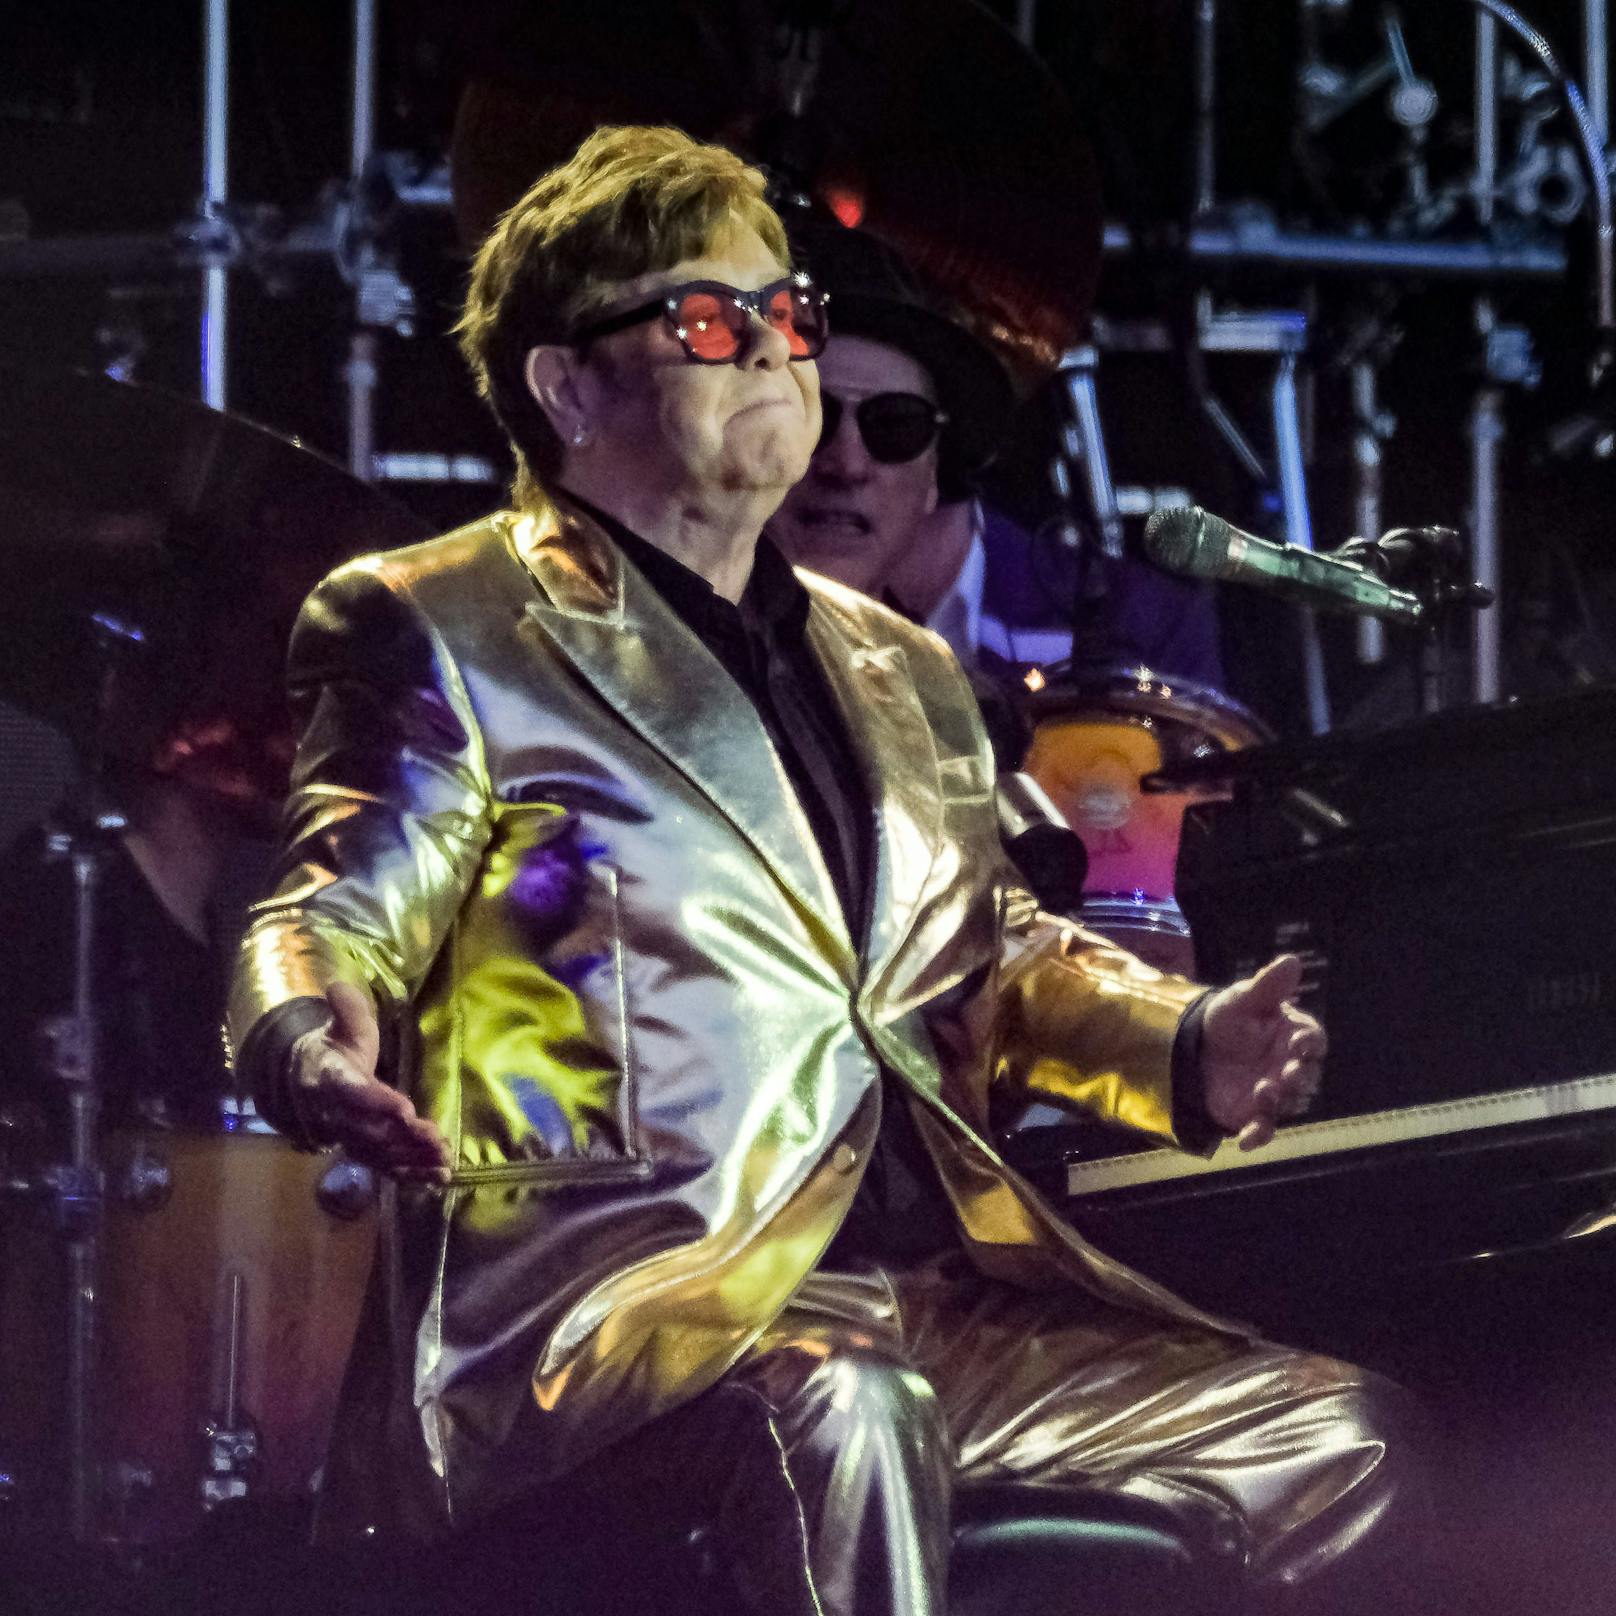 Ära geht zu Ende: Spielt Elton John seine letzte Show?